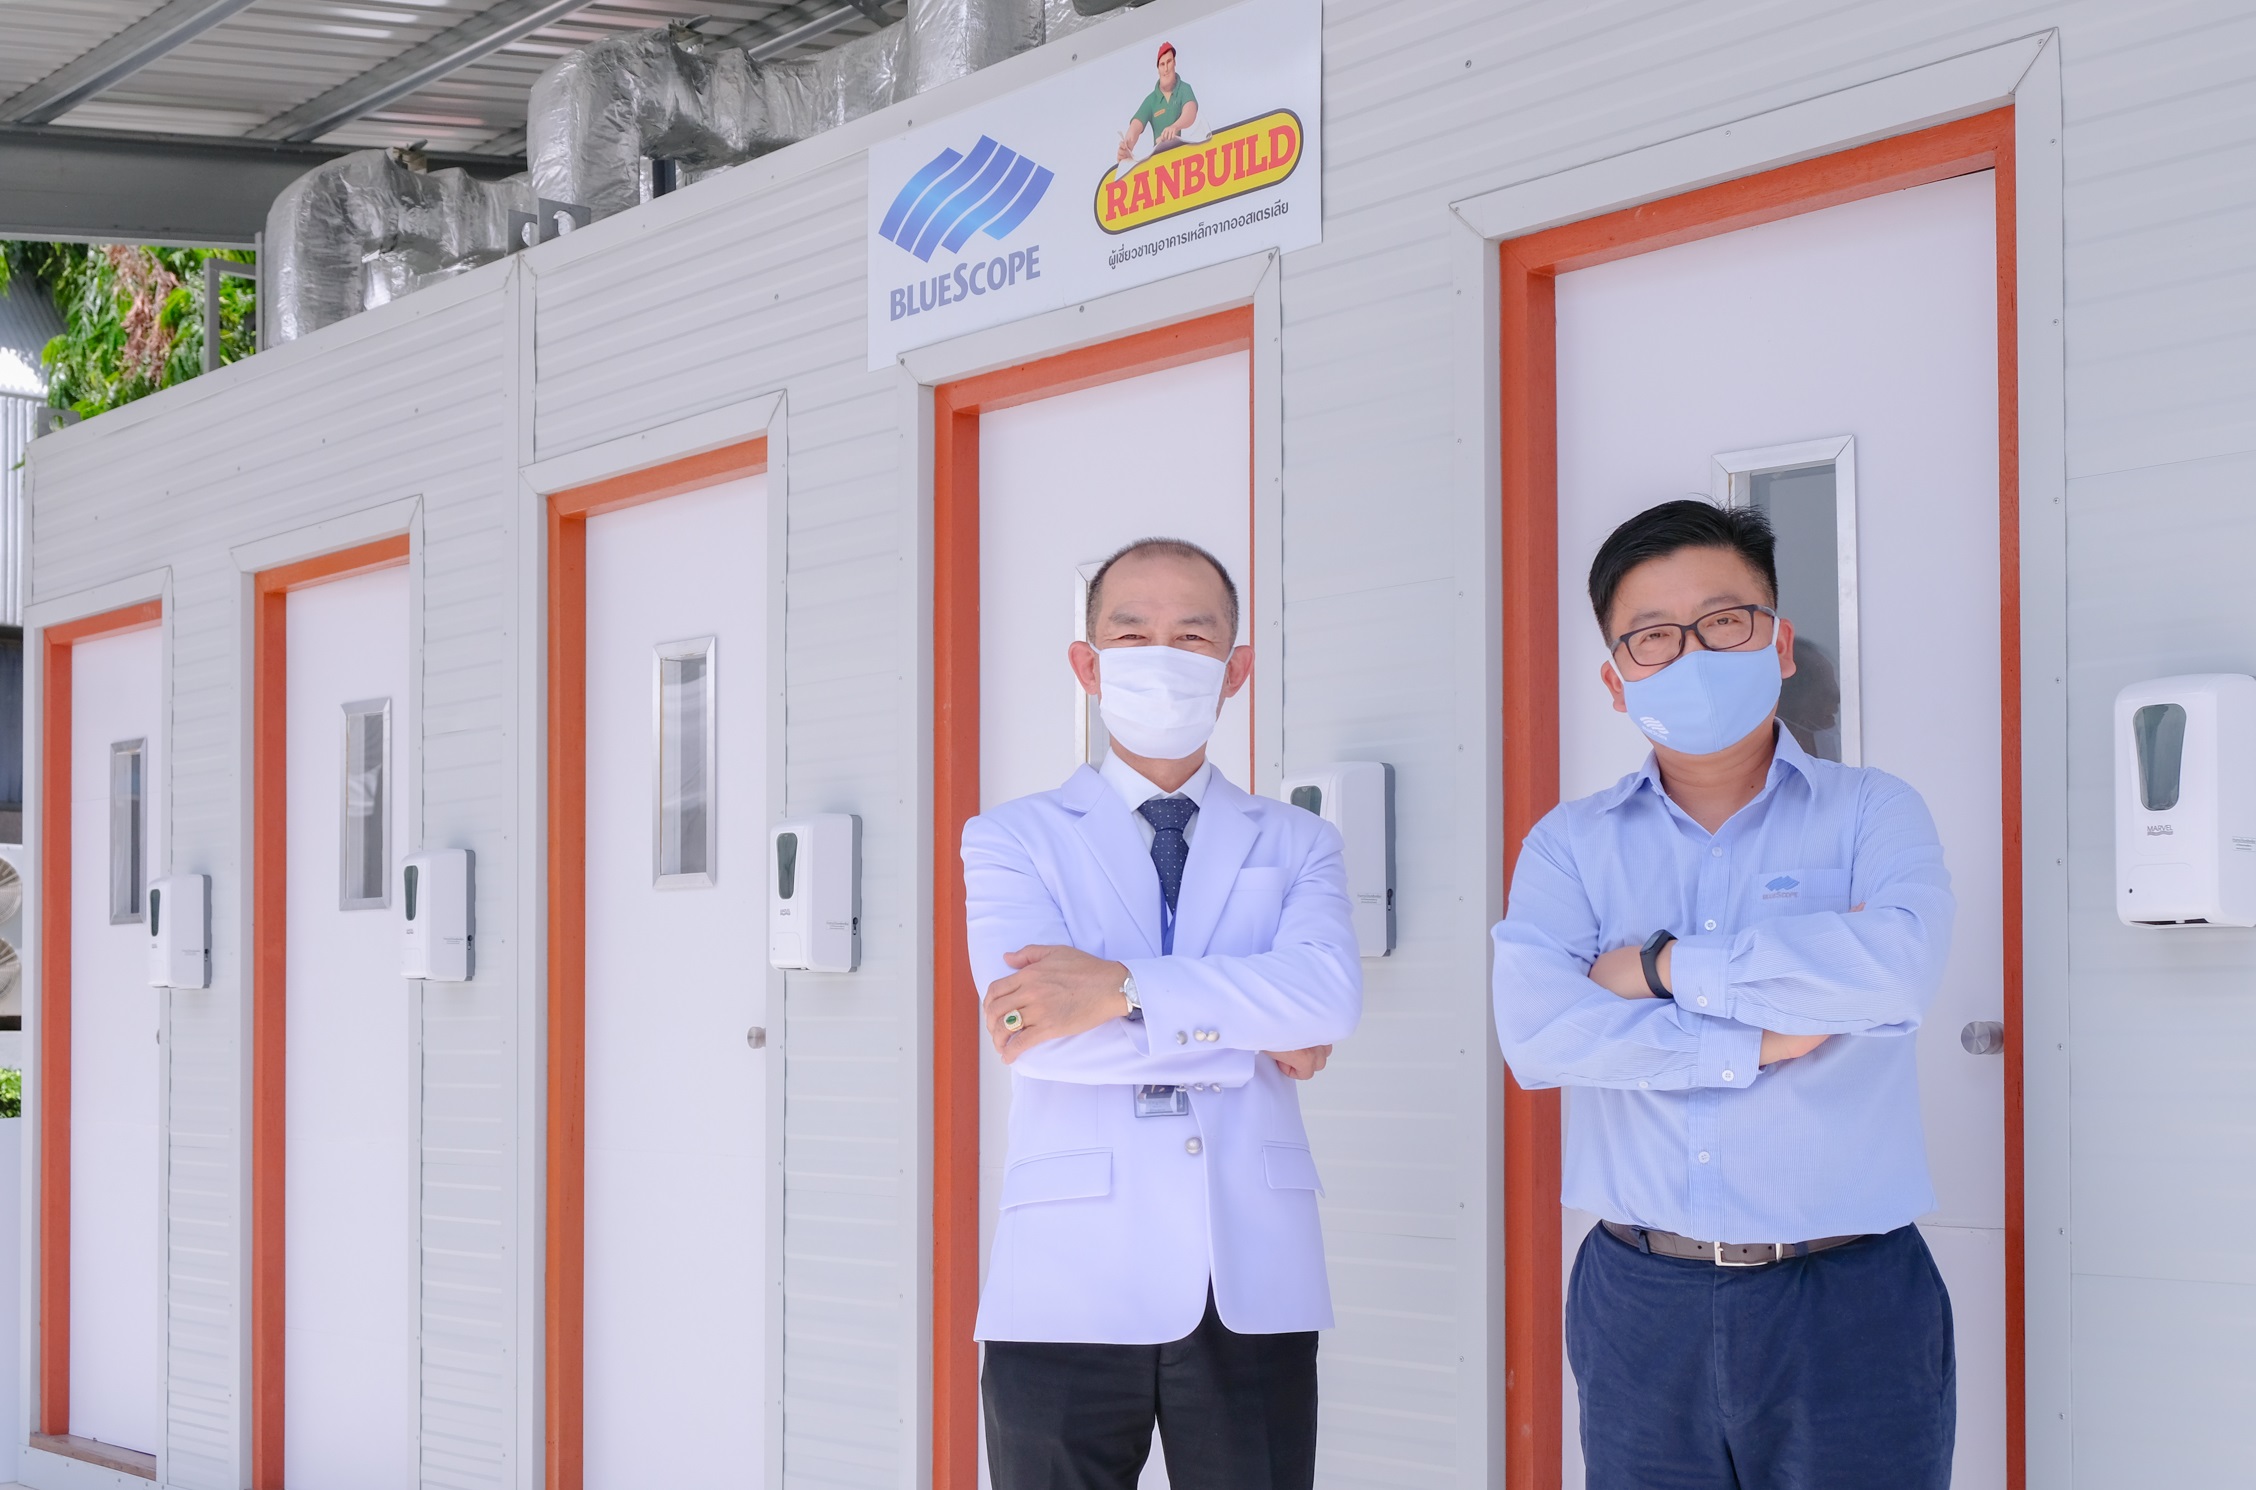 ภาพข่าว: บลูสโคป ประเทศไทย มอบห้องตรวจความดันลบเพื่อคัดกรองผู้ติดเชื้อโรคโควิด-19 ให้ทีมแพทย์ รพ.นพรัตนราชธานี